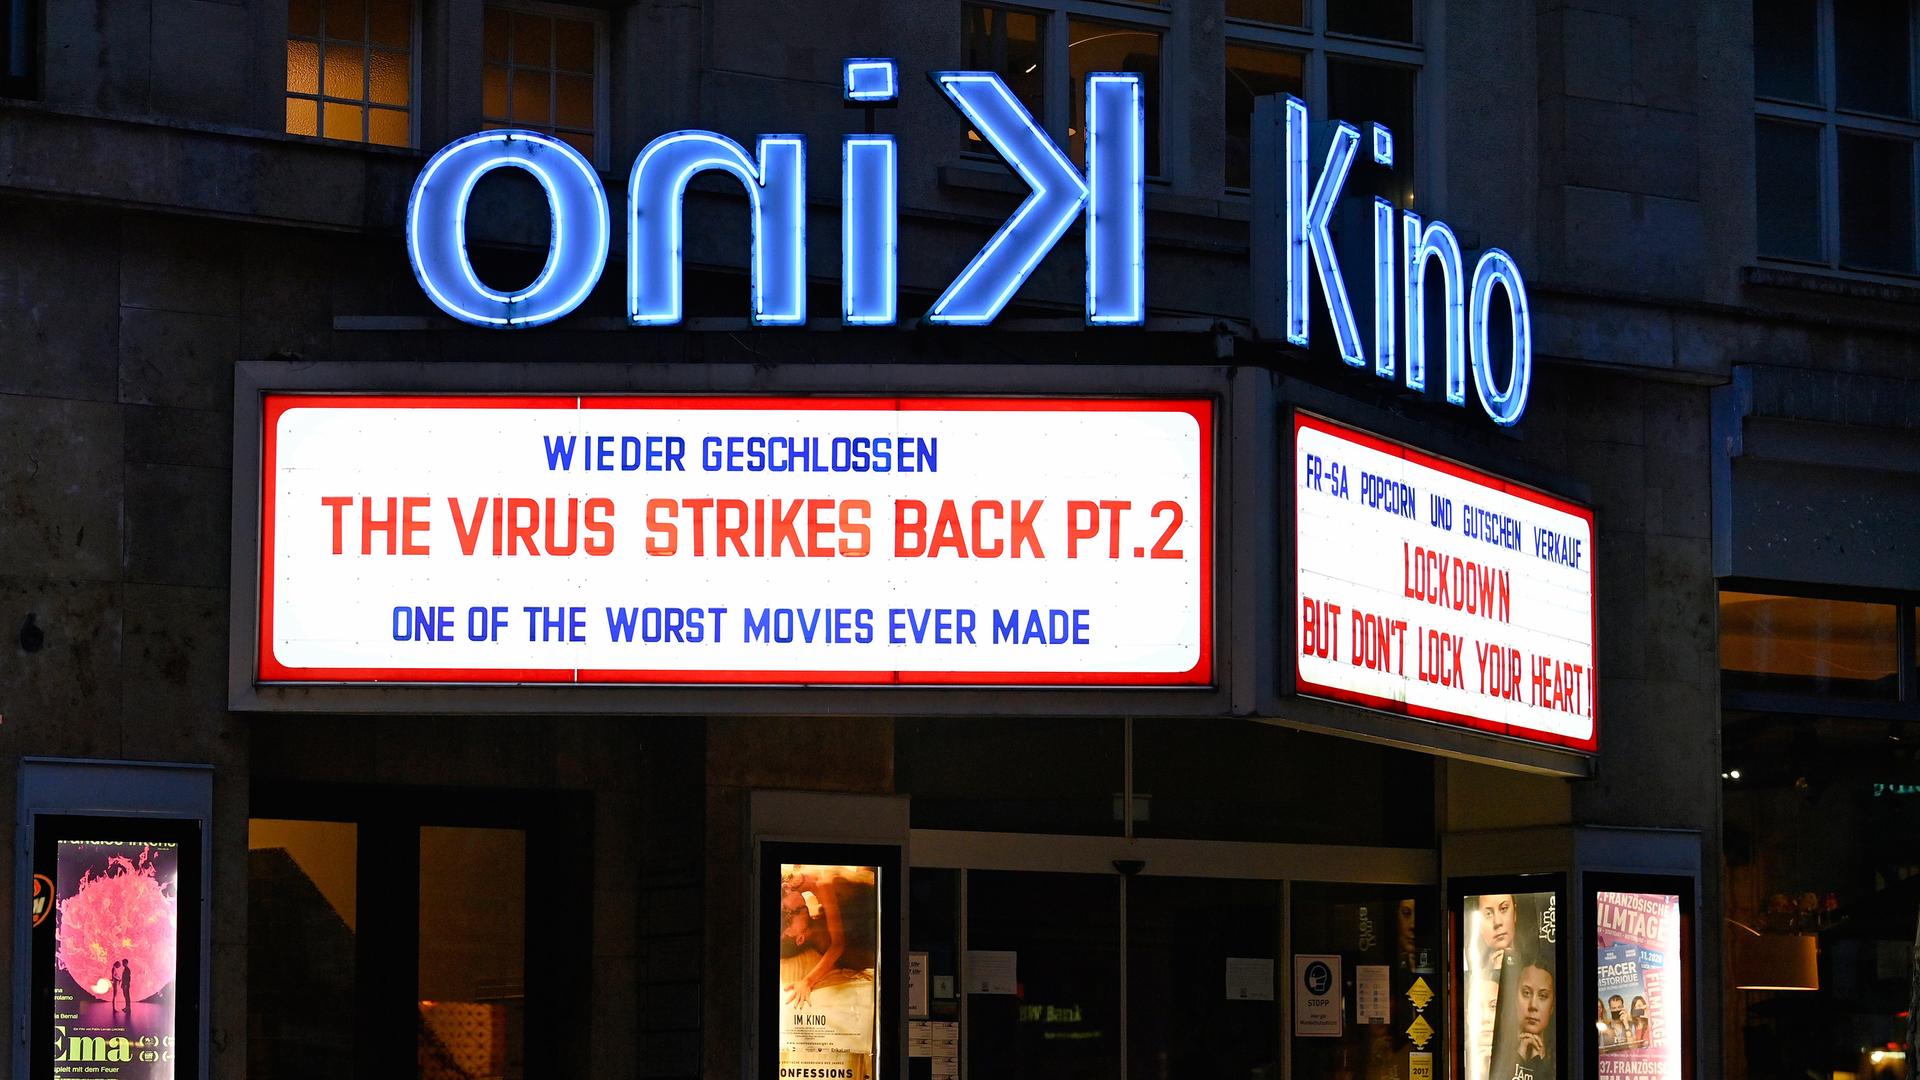 Wieder geschlossen: Auf der Anzeigetafel des Delphi Arthouse-Kinos in Stuttgart steht der fiktive Filmtitel "The Virus Strikes Back Pt. 2", eine Anspielung auf den Film "The Empire Strikes Back". 